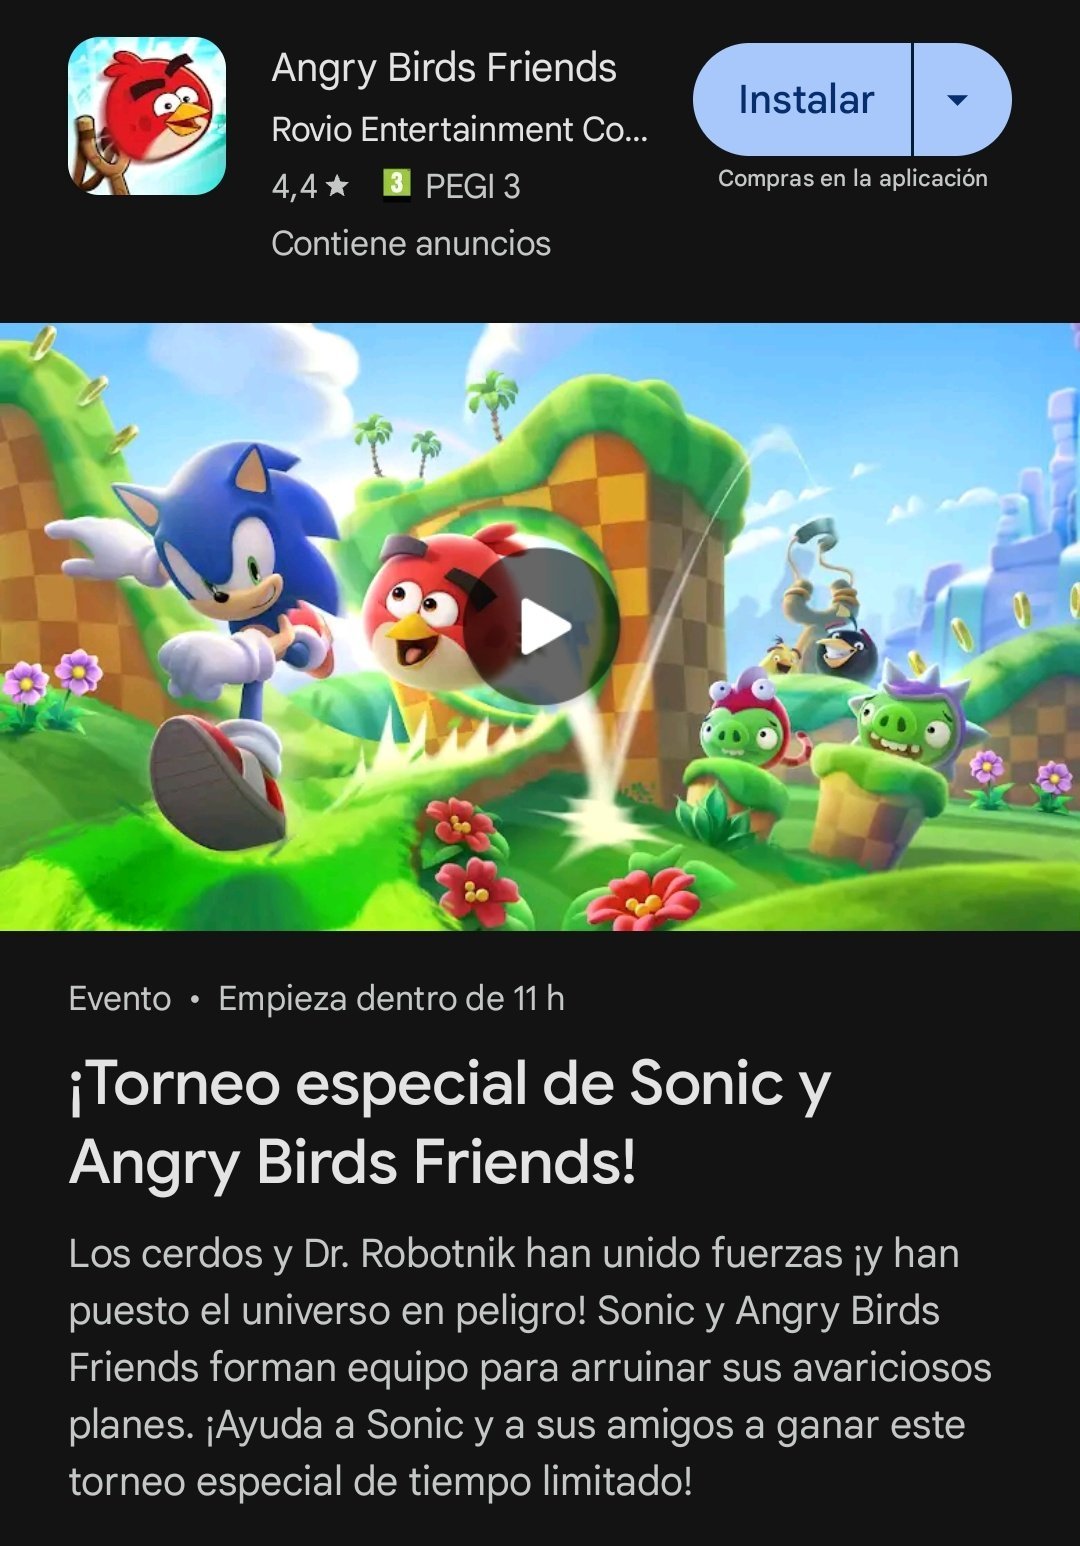 Sonic The Hedgehog x Angry Birds anuncian colaboración,¿Nuevo juego en camino? 7